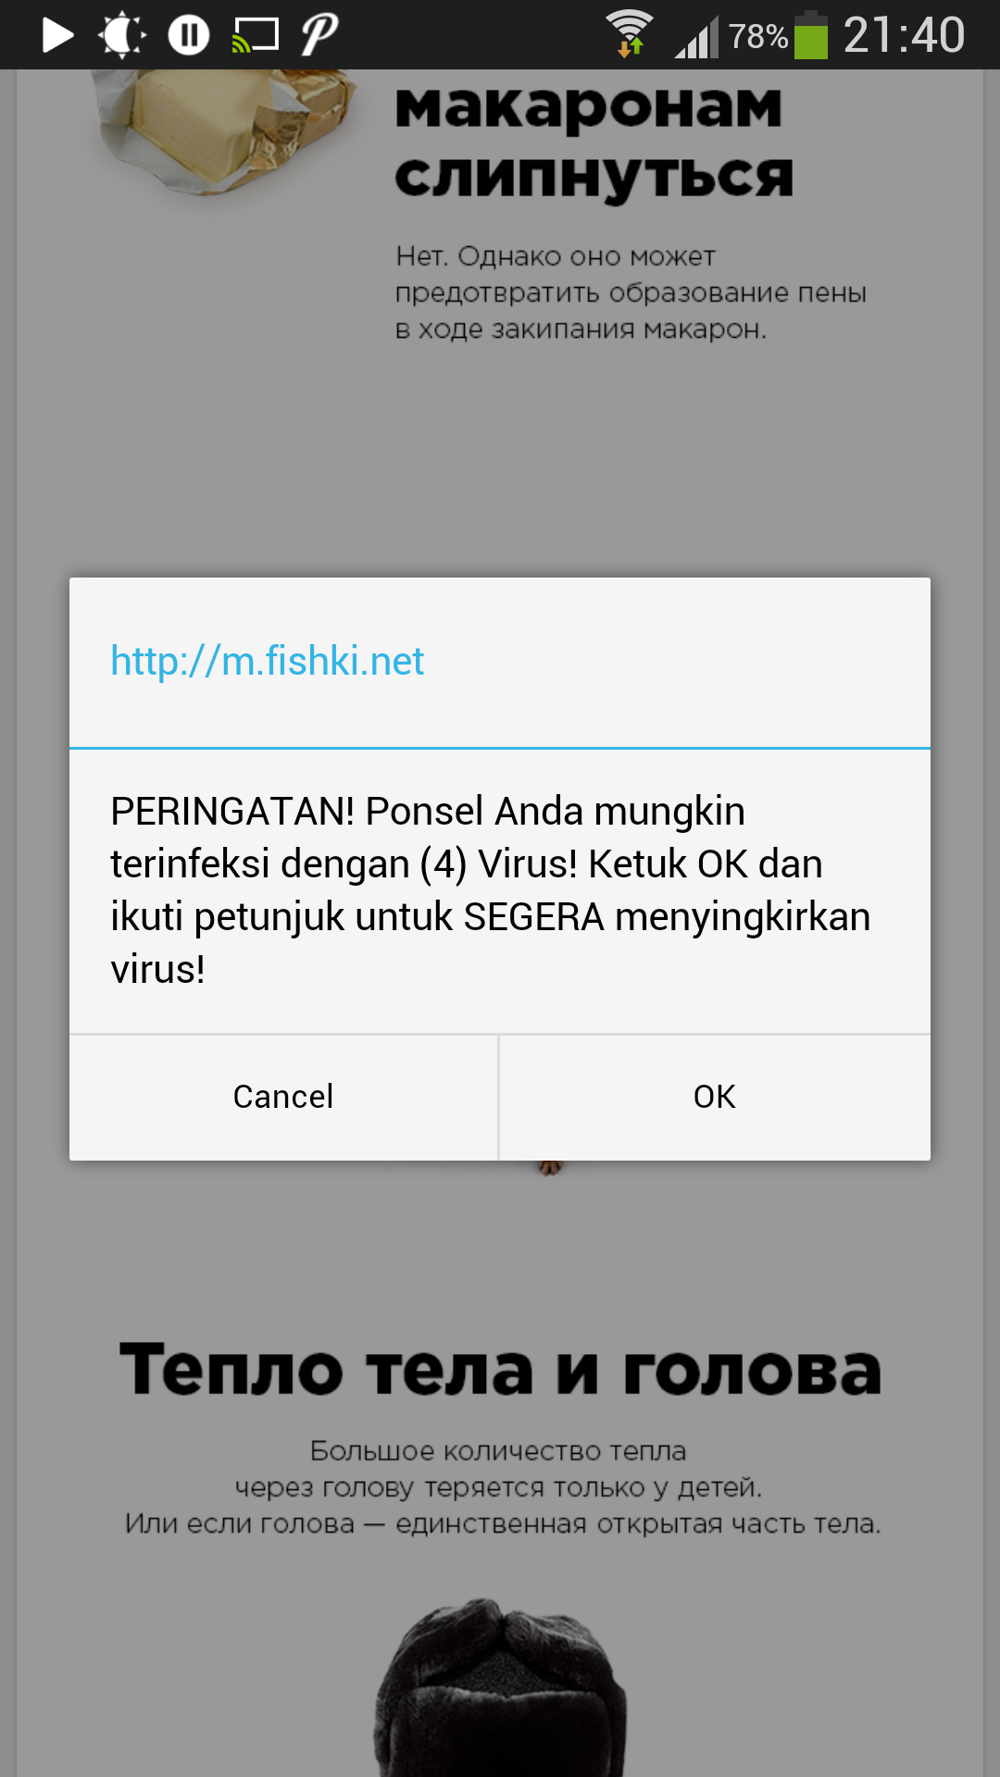 Фишки.нет заражает телефоны своих пользователей вирусами?